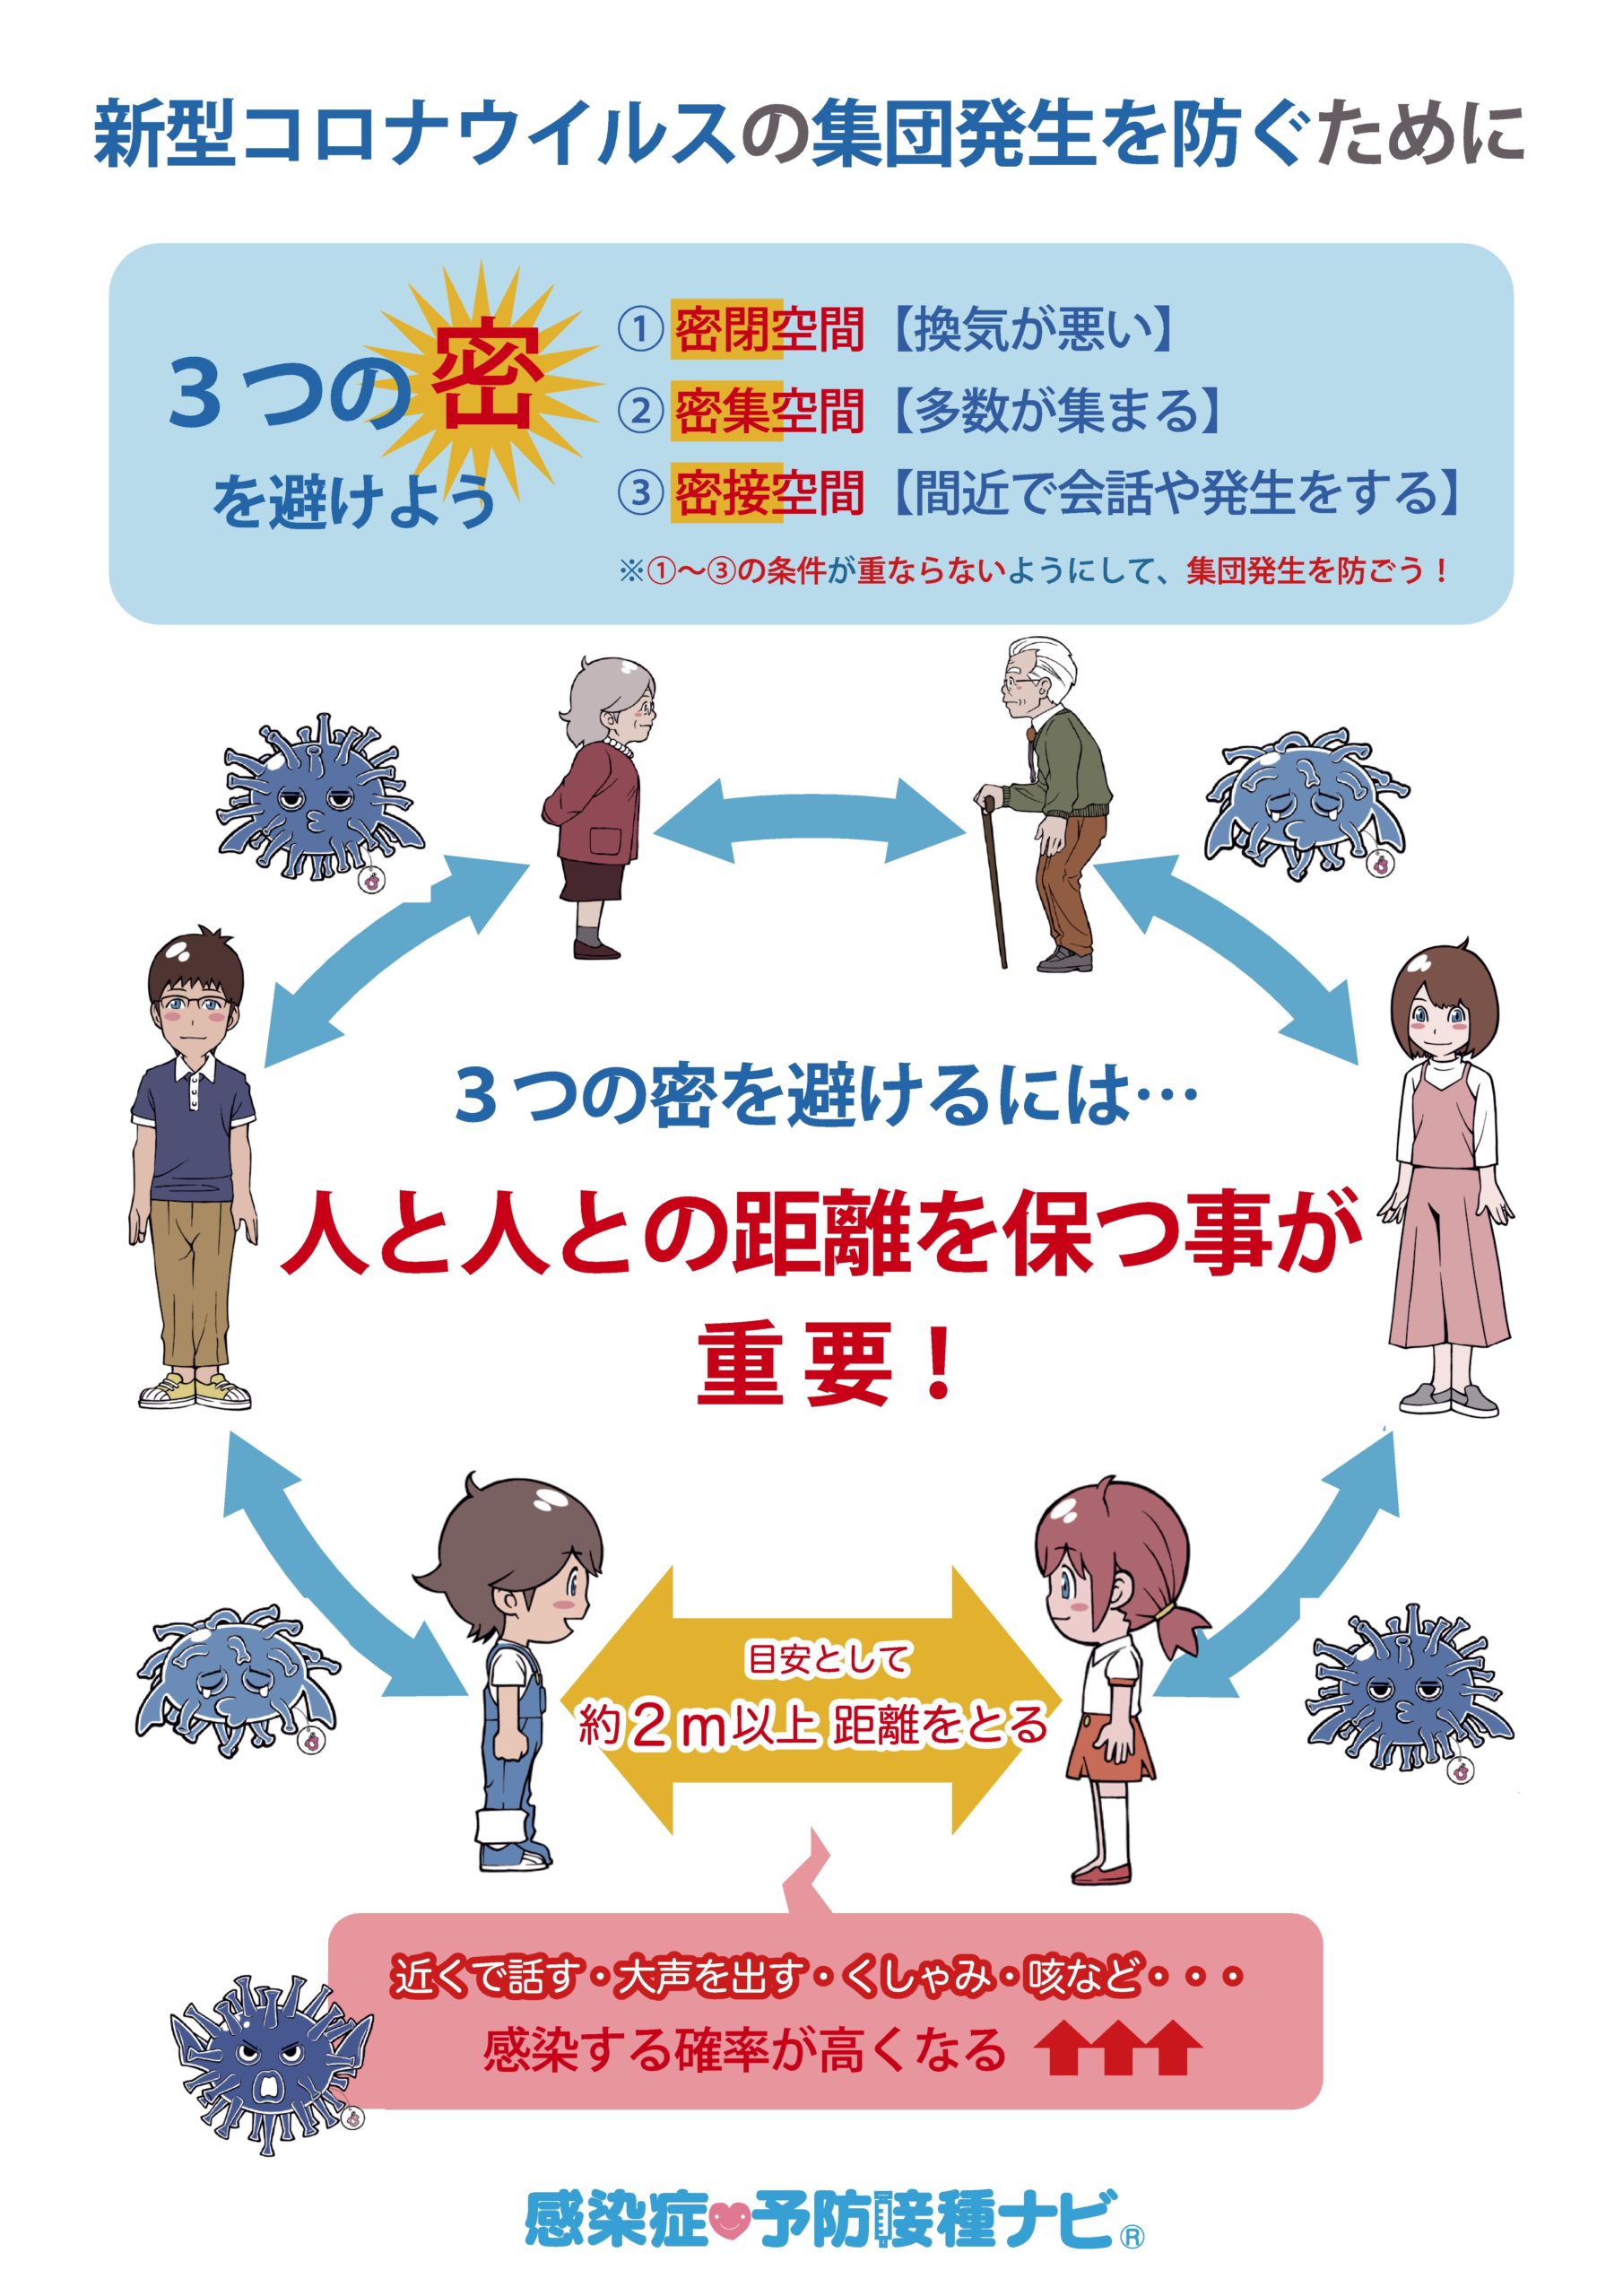 広島テレビ 新型コロナ予防啓発用イラストをwebで無償提供 電波新聞